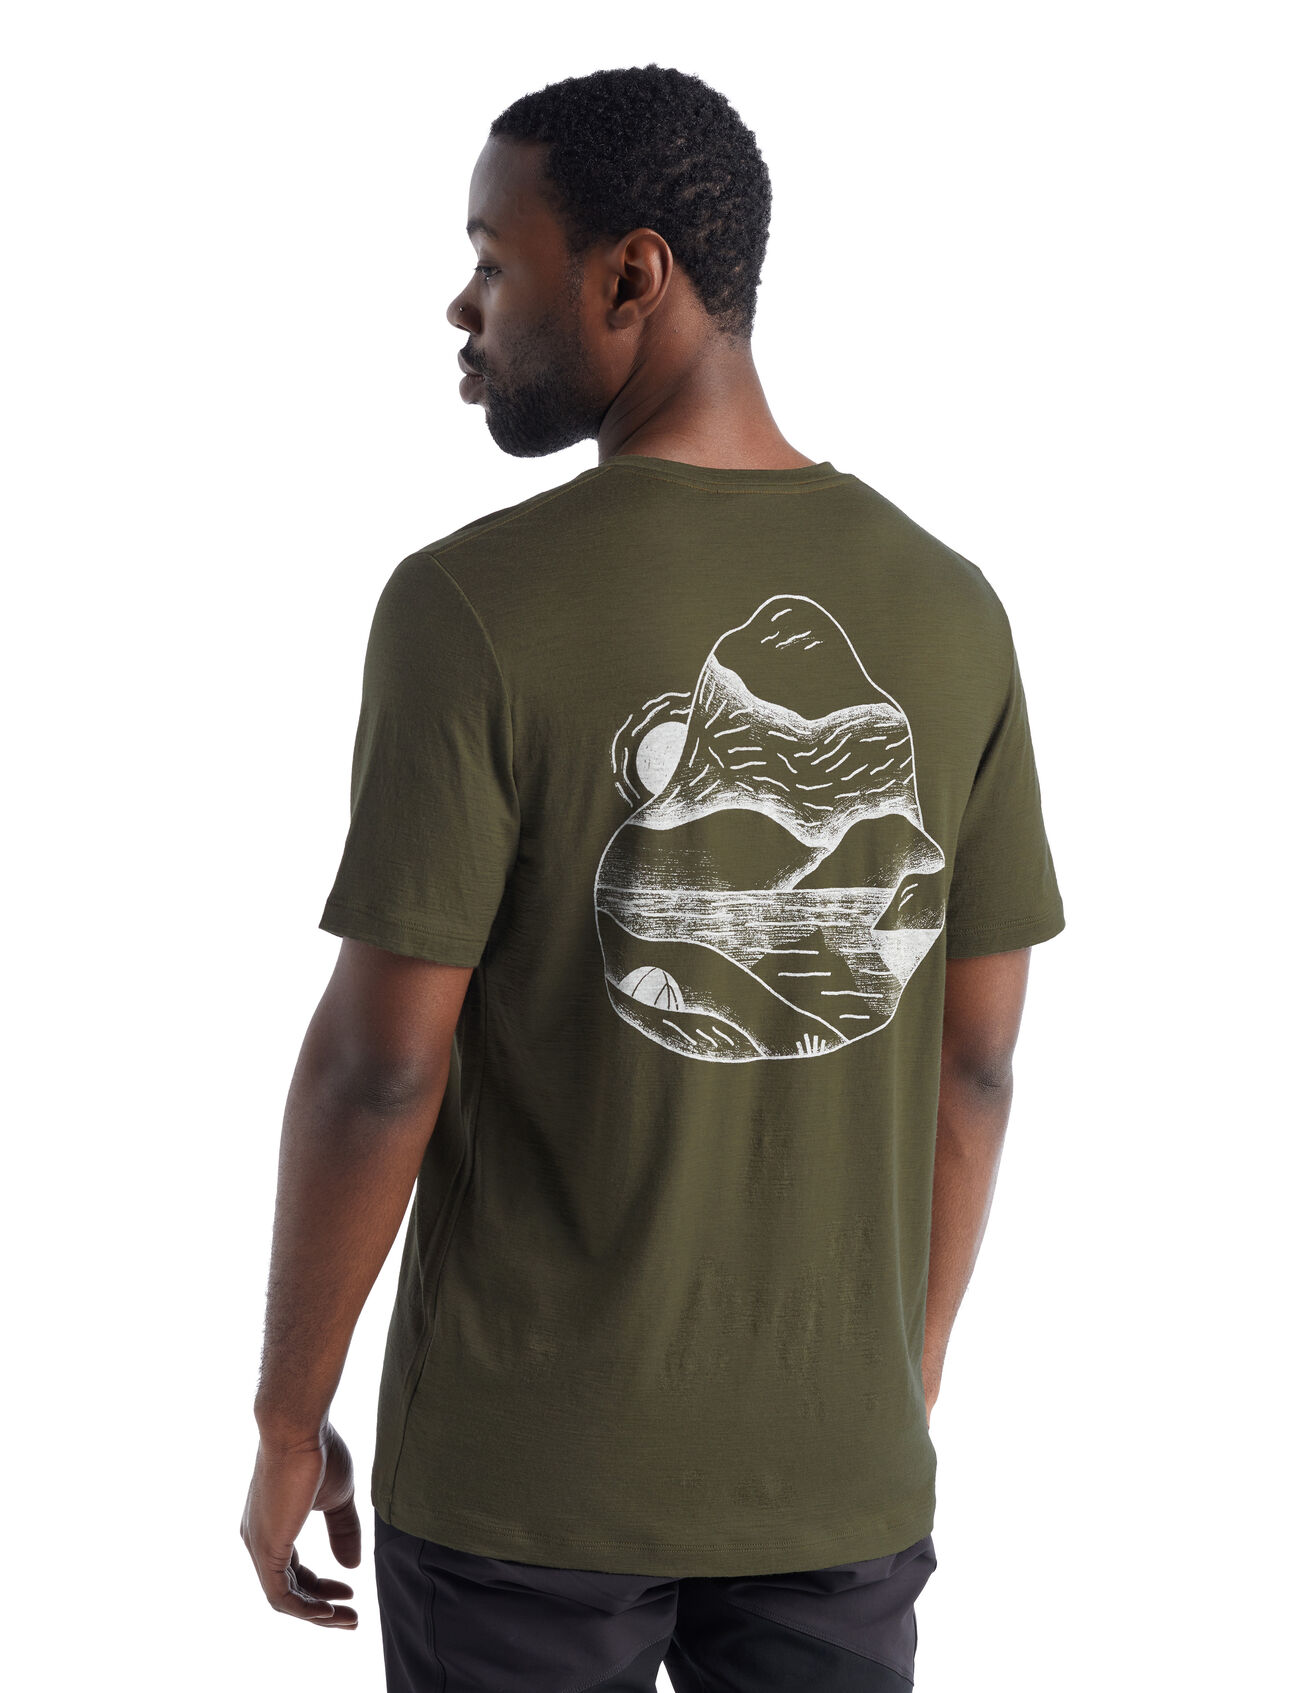 Merino Tech Lite II T-Shirt Sunrise Ridge Herren Unser vielseitiges technisches Merino T-Shirt, das dich bei jedem Abenteuer mit Komfort, Atmungsaktivität und Geruchsneutralität begleitet, das kurzärmlige Tech Lite II T-Shirt Sunrise Ridge bietet dank 100% Merinowolle natürliche Performance. Die einzigartige Bergillustration von Mark Conlan verleiht dem T-Shirt eine künstlerische Note.  